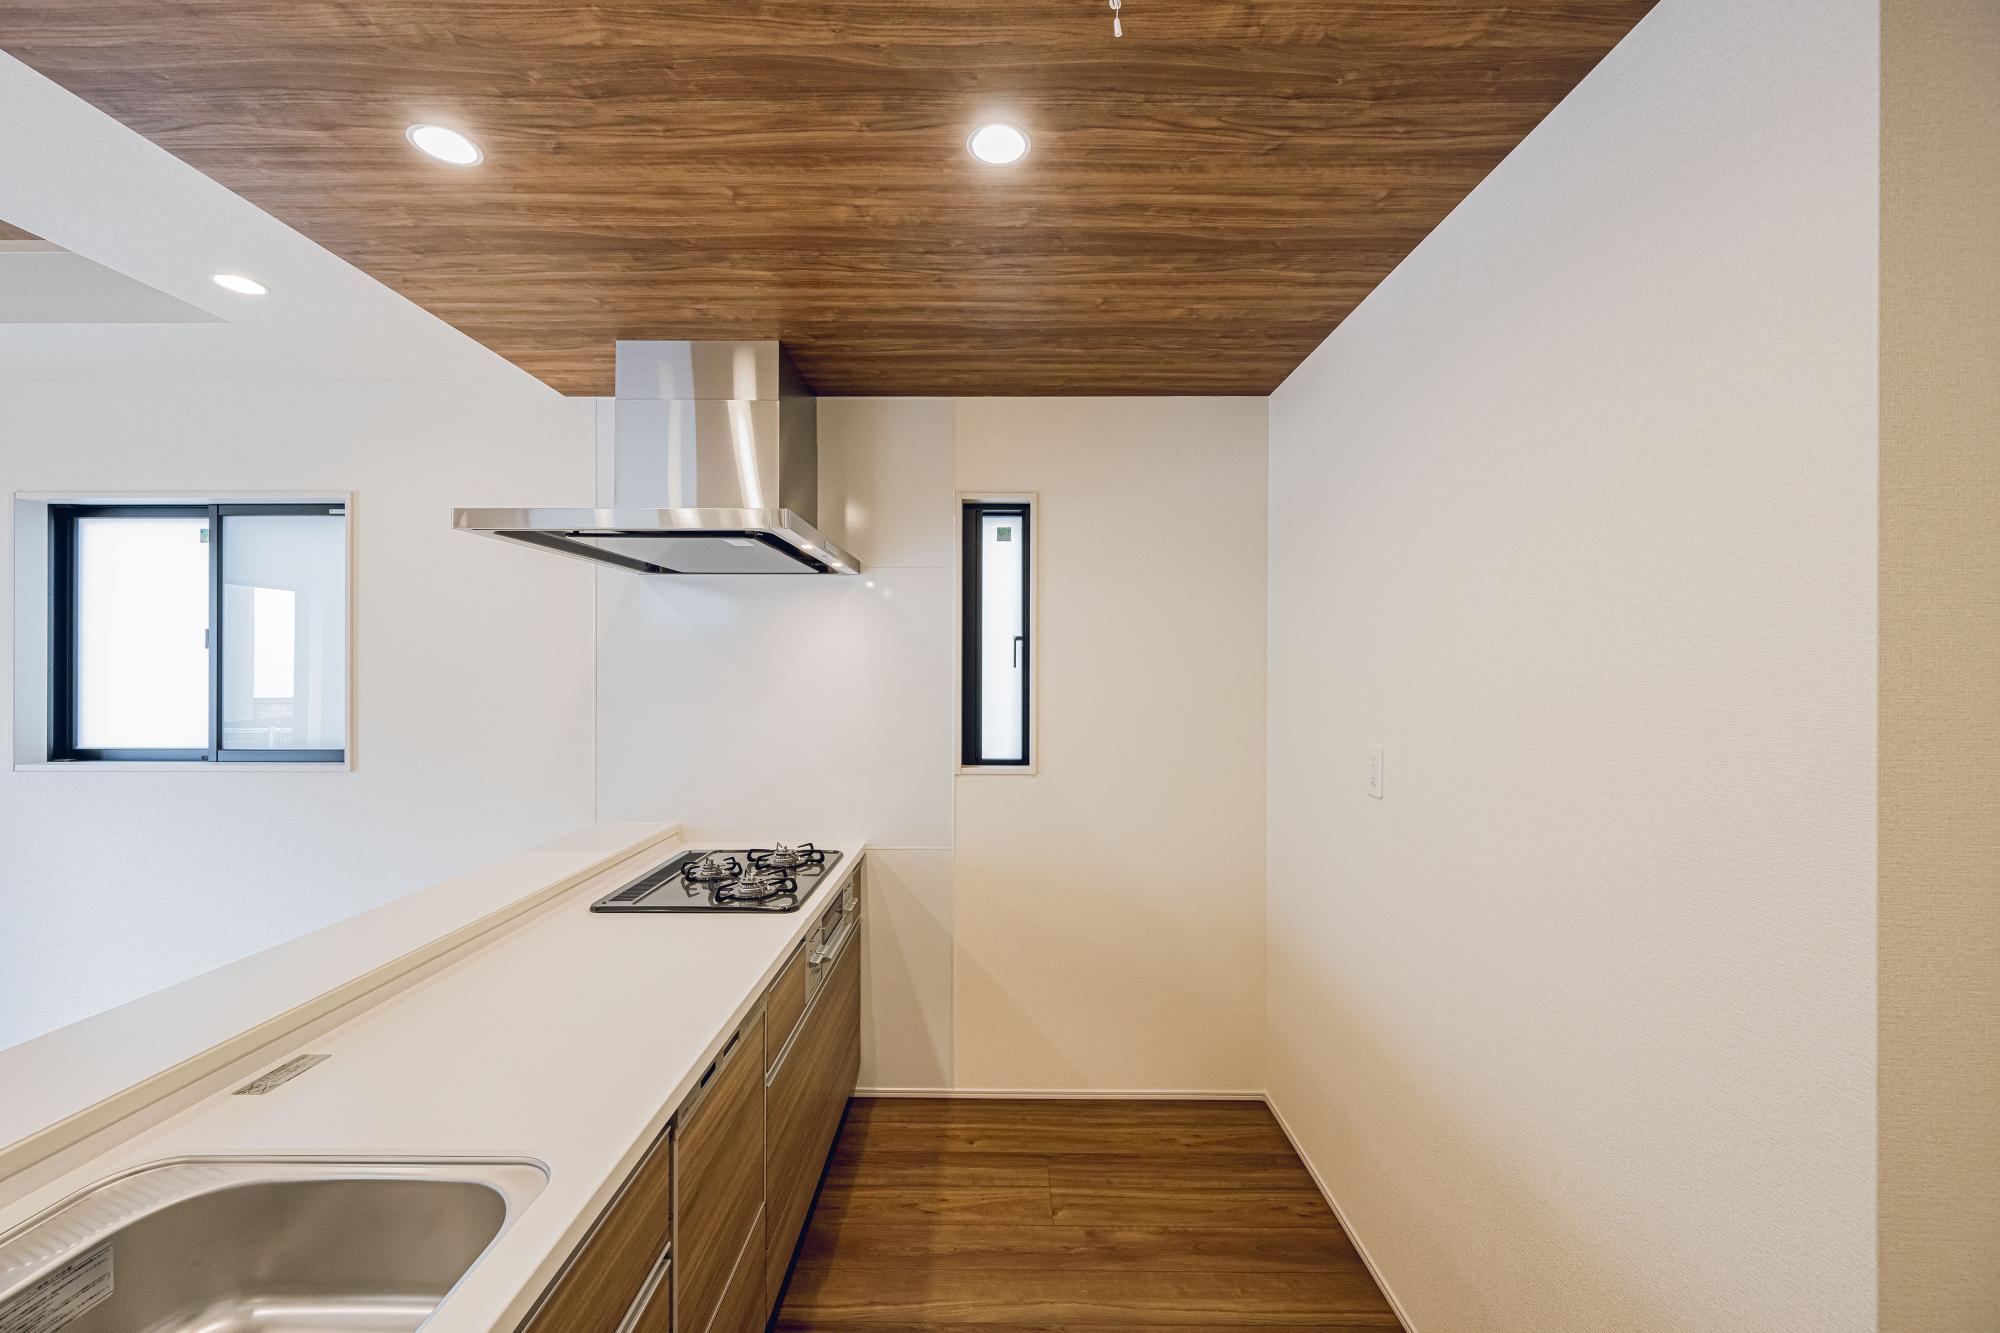 2号棟:キッチン　「ビルトイン食洗器」付システムキッチン。
人造大理石システムキッチン(天板)
外の光と空気が入るキッチンの小窓	